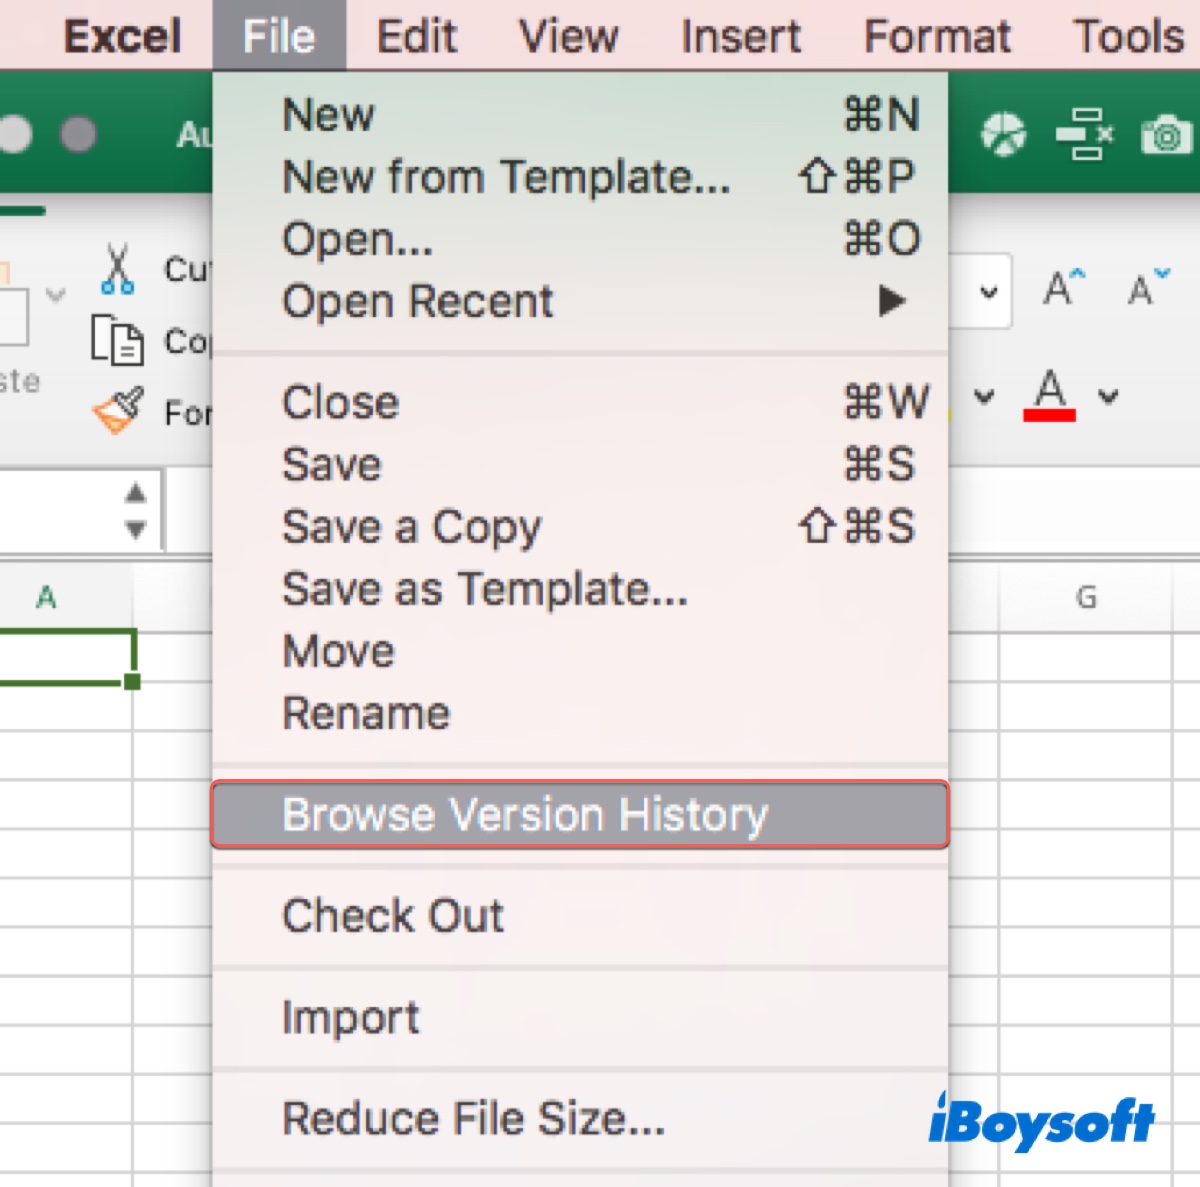 L'historique des versions de navigation est grisé sur Excel